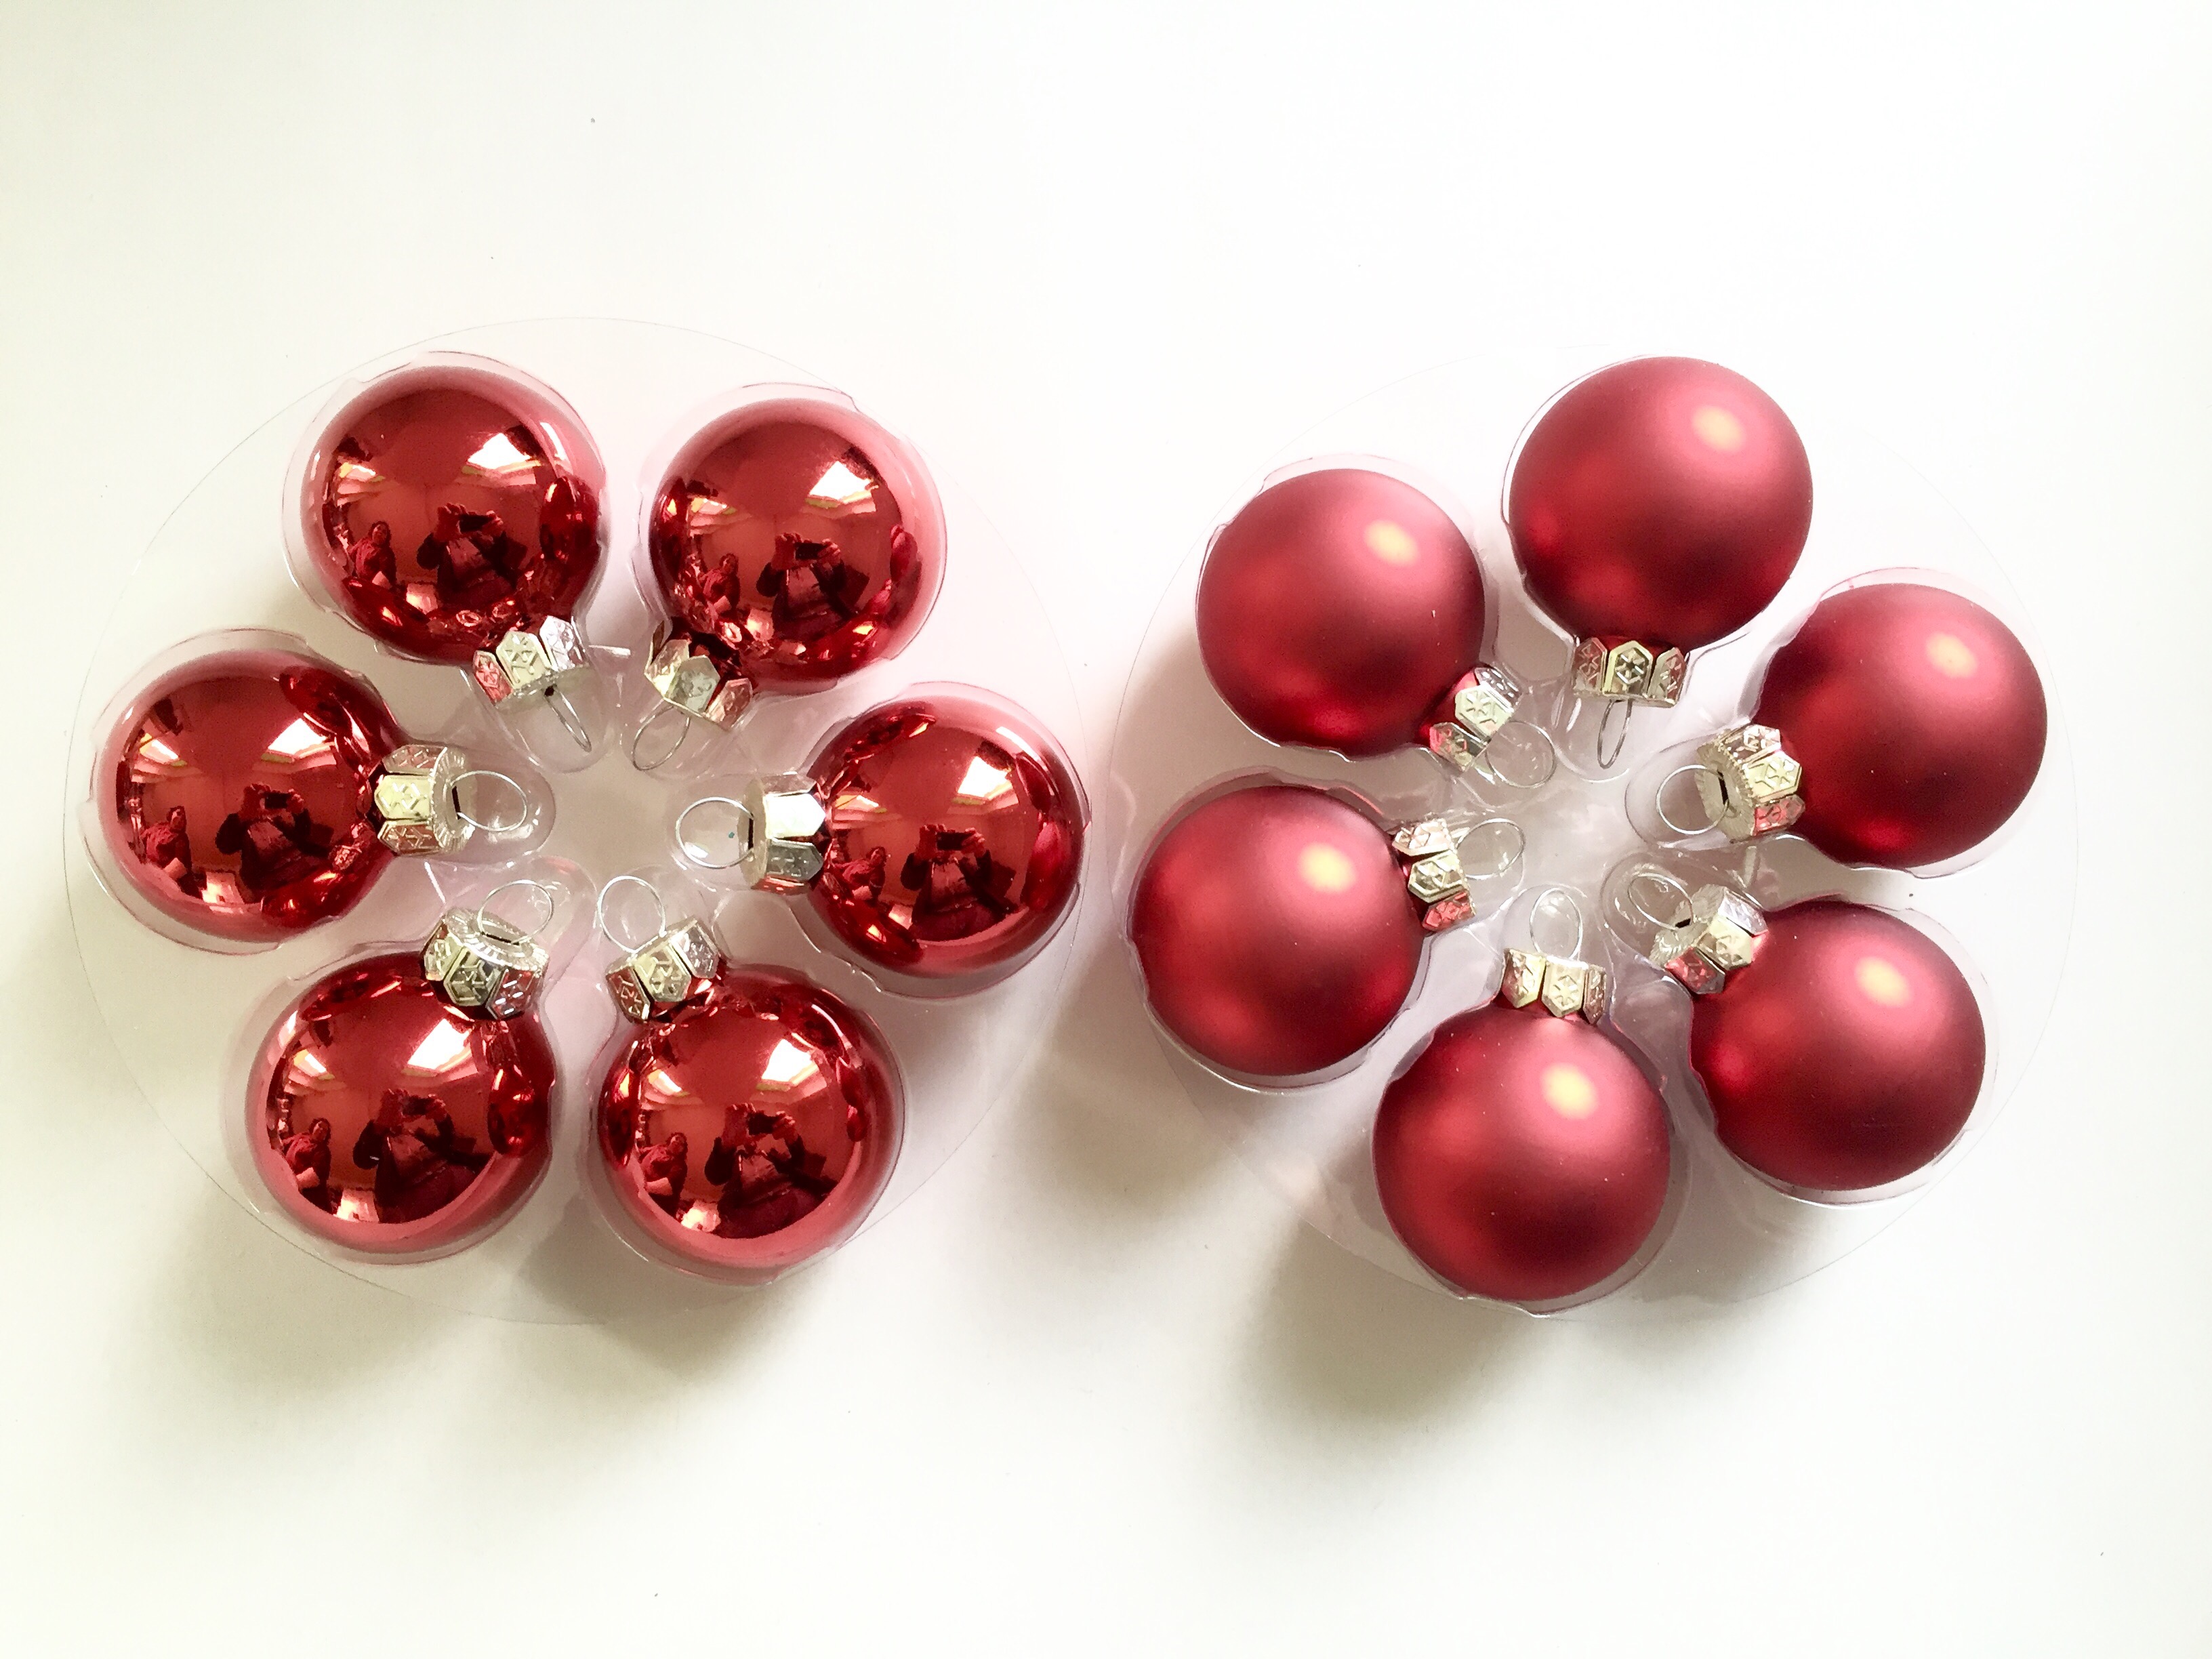 1632442067 622 DIY make an advent wreath Christmas wreath ideas - DIY: make an advent wreath, Christmas wreath ideas